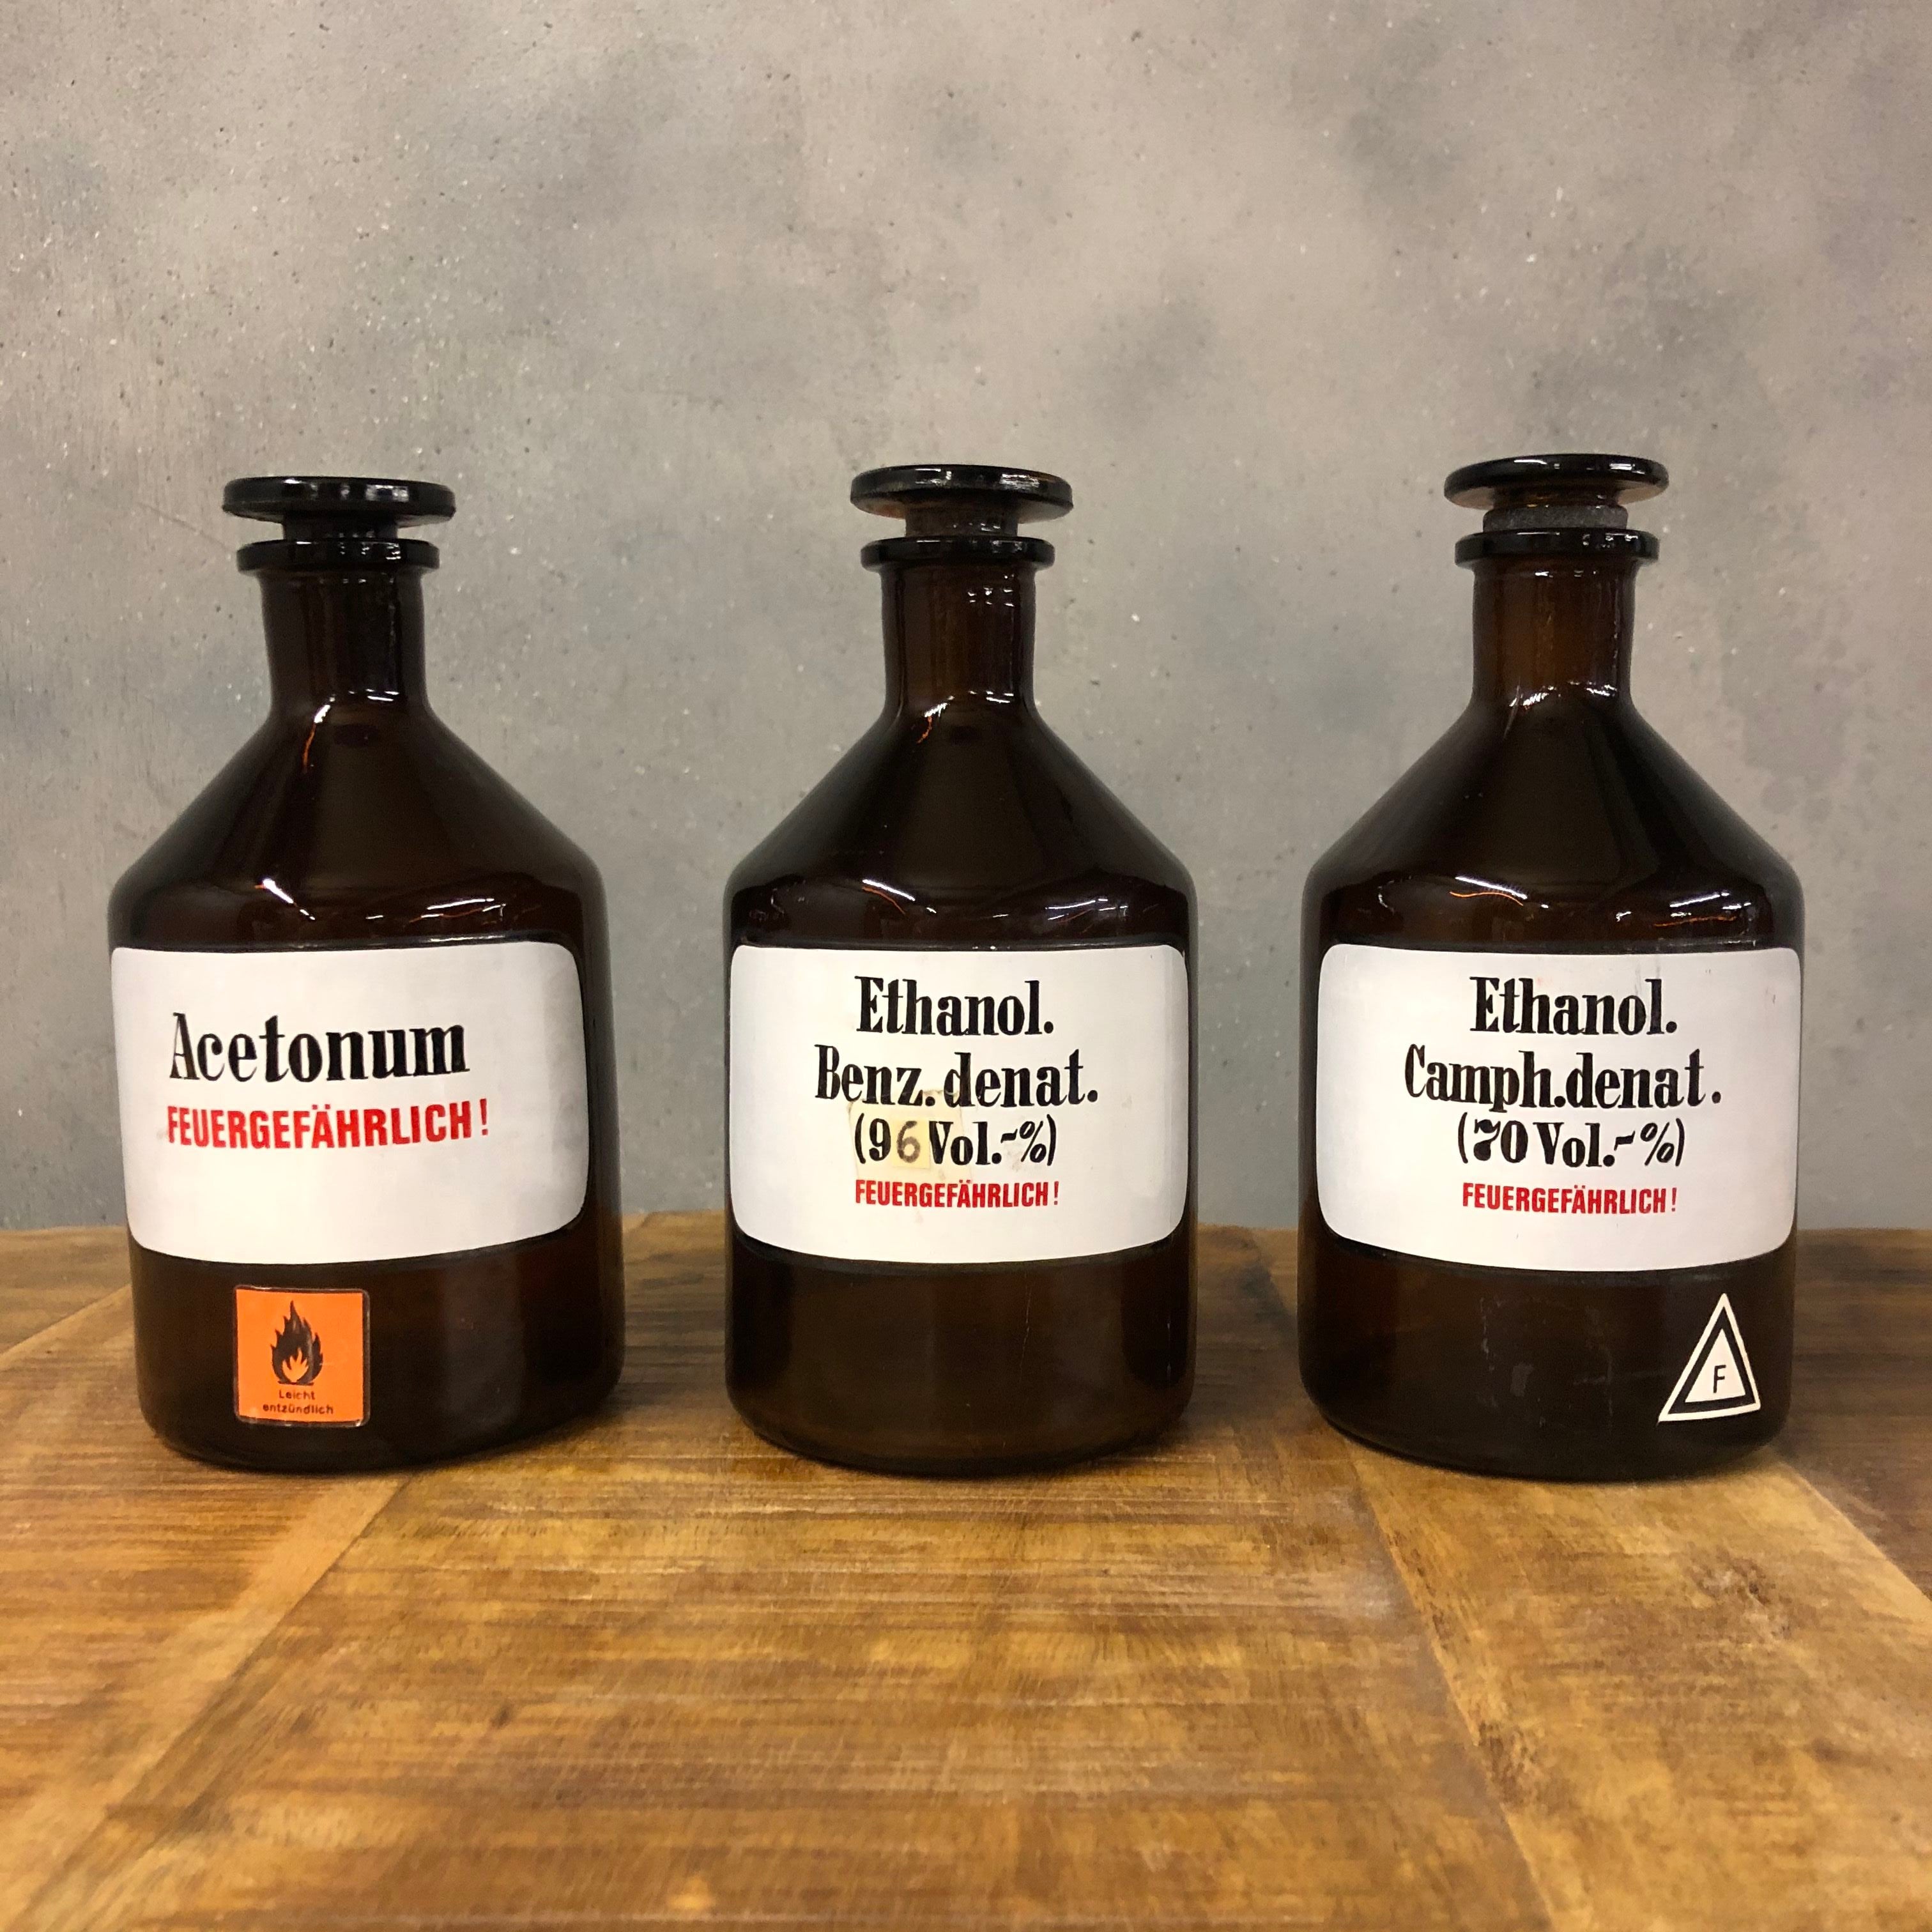 3 Vintage chemical bottles.